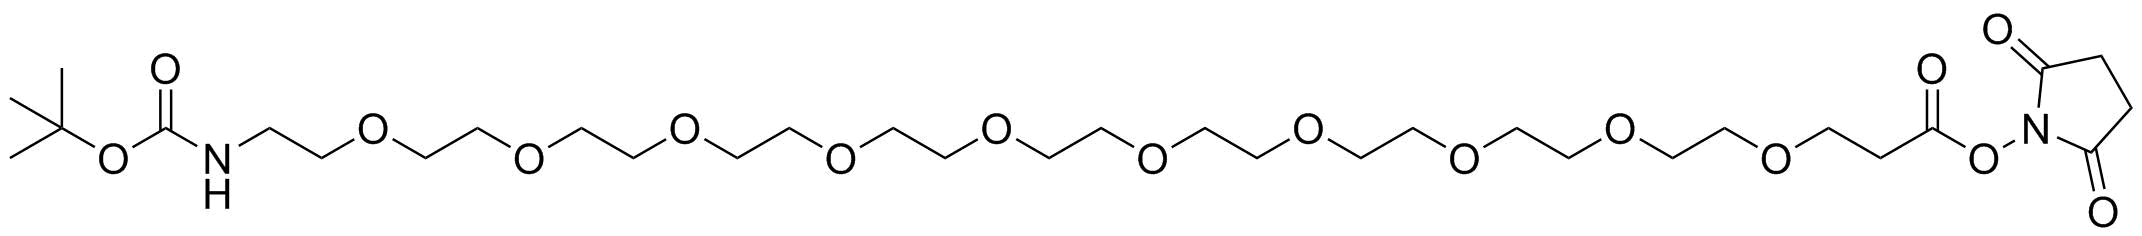 t-Boc-N-amido-PEG10-NHS ester